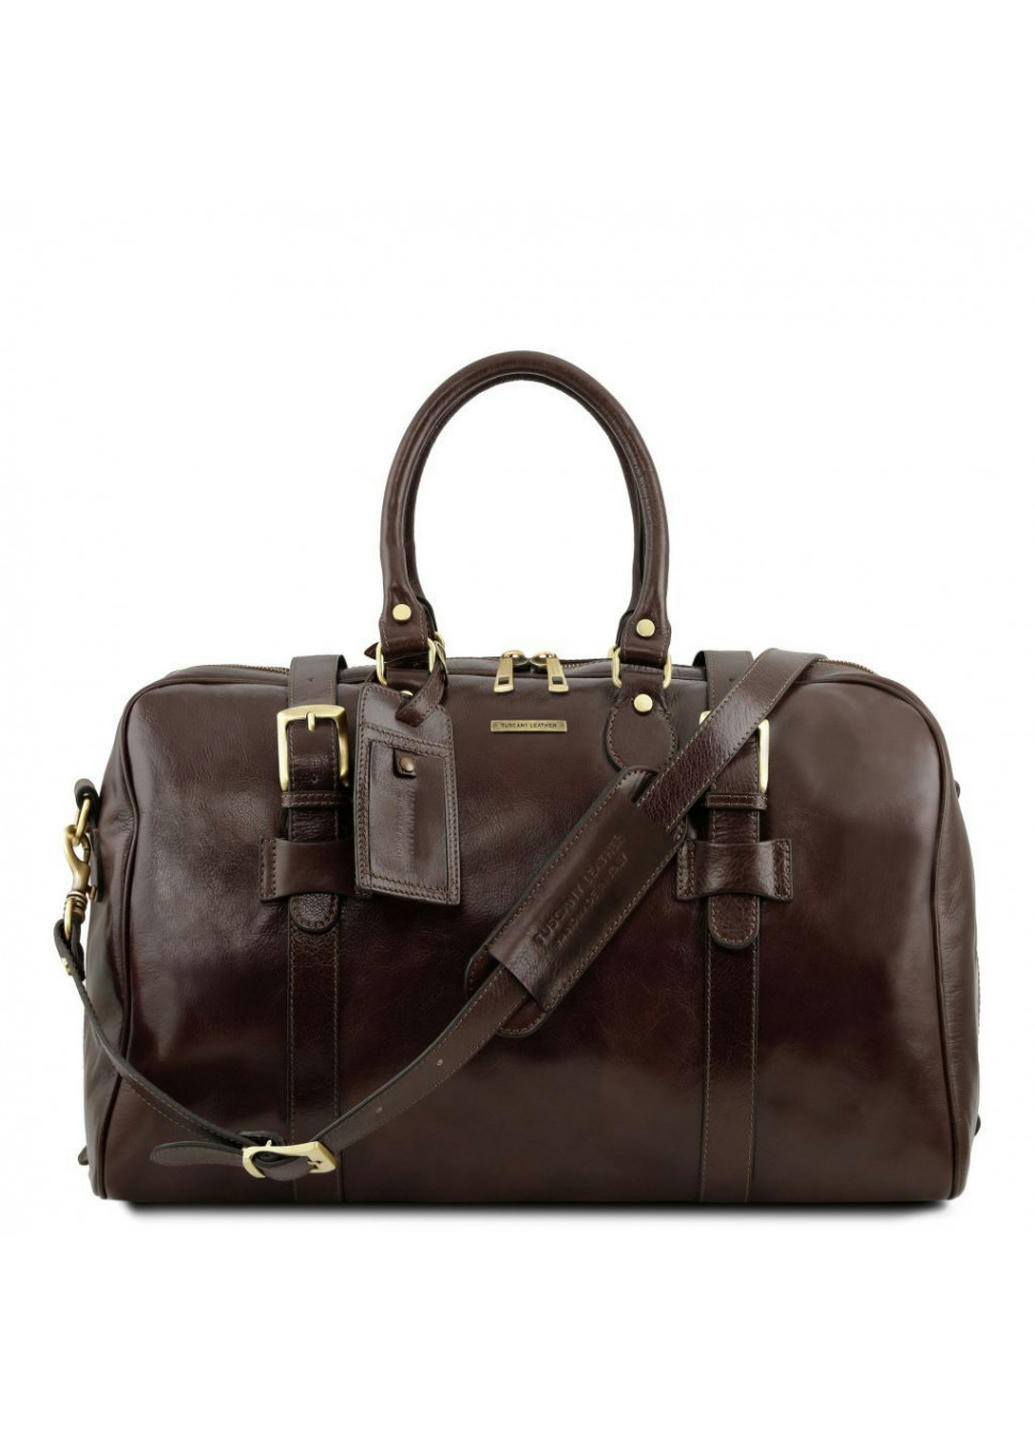 Дорожная кожаная сумка с пряжками - Малый размер Tuscany TL141249 Voyager (Темно-коричневый) Tuscany Leather (257657391)